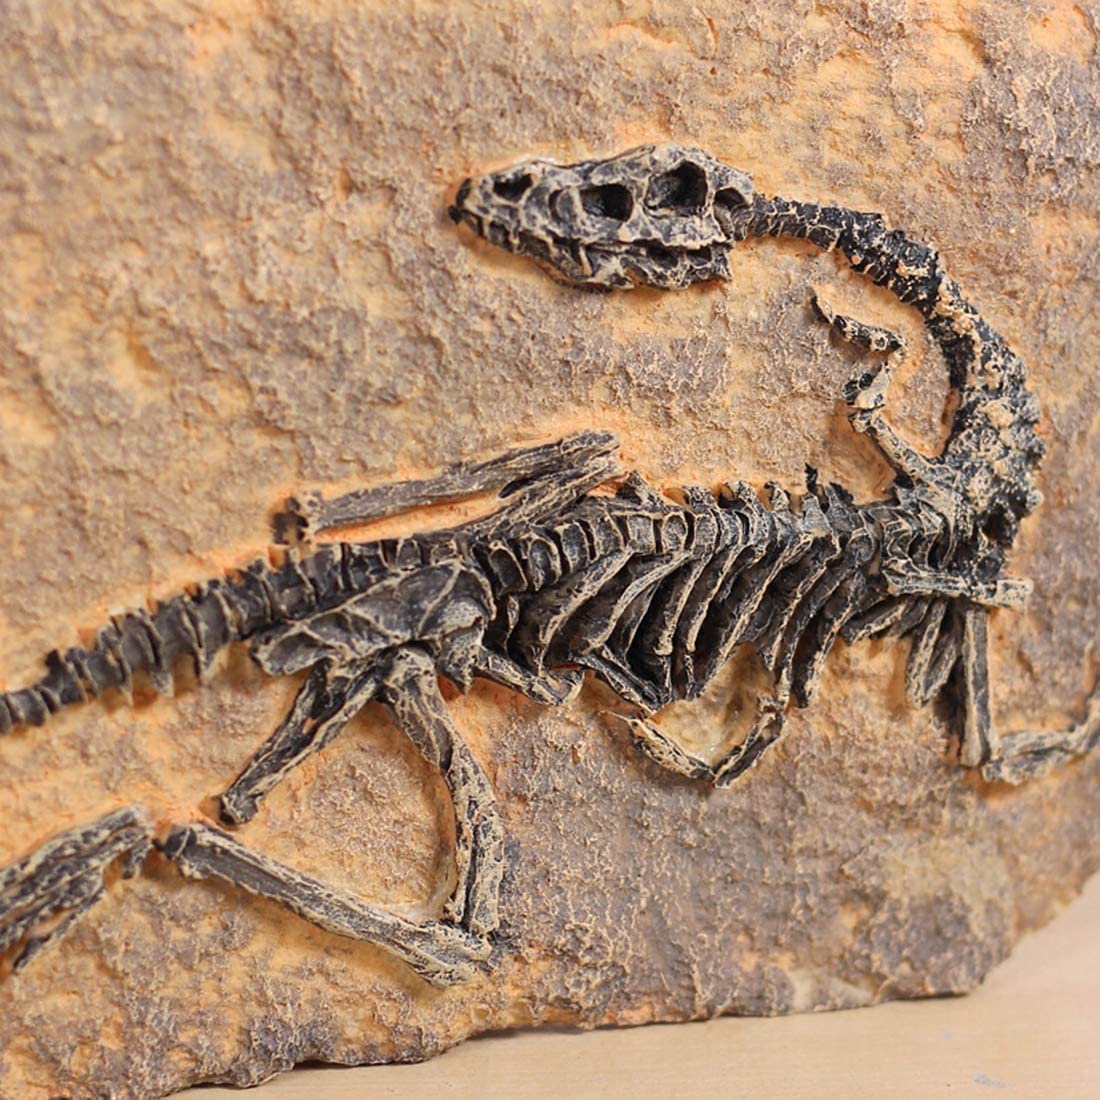 Statua fossile di dinosauro in resina